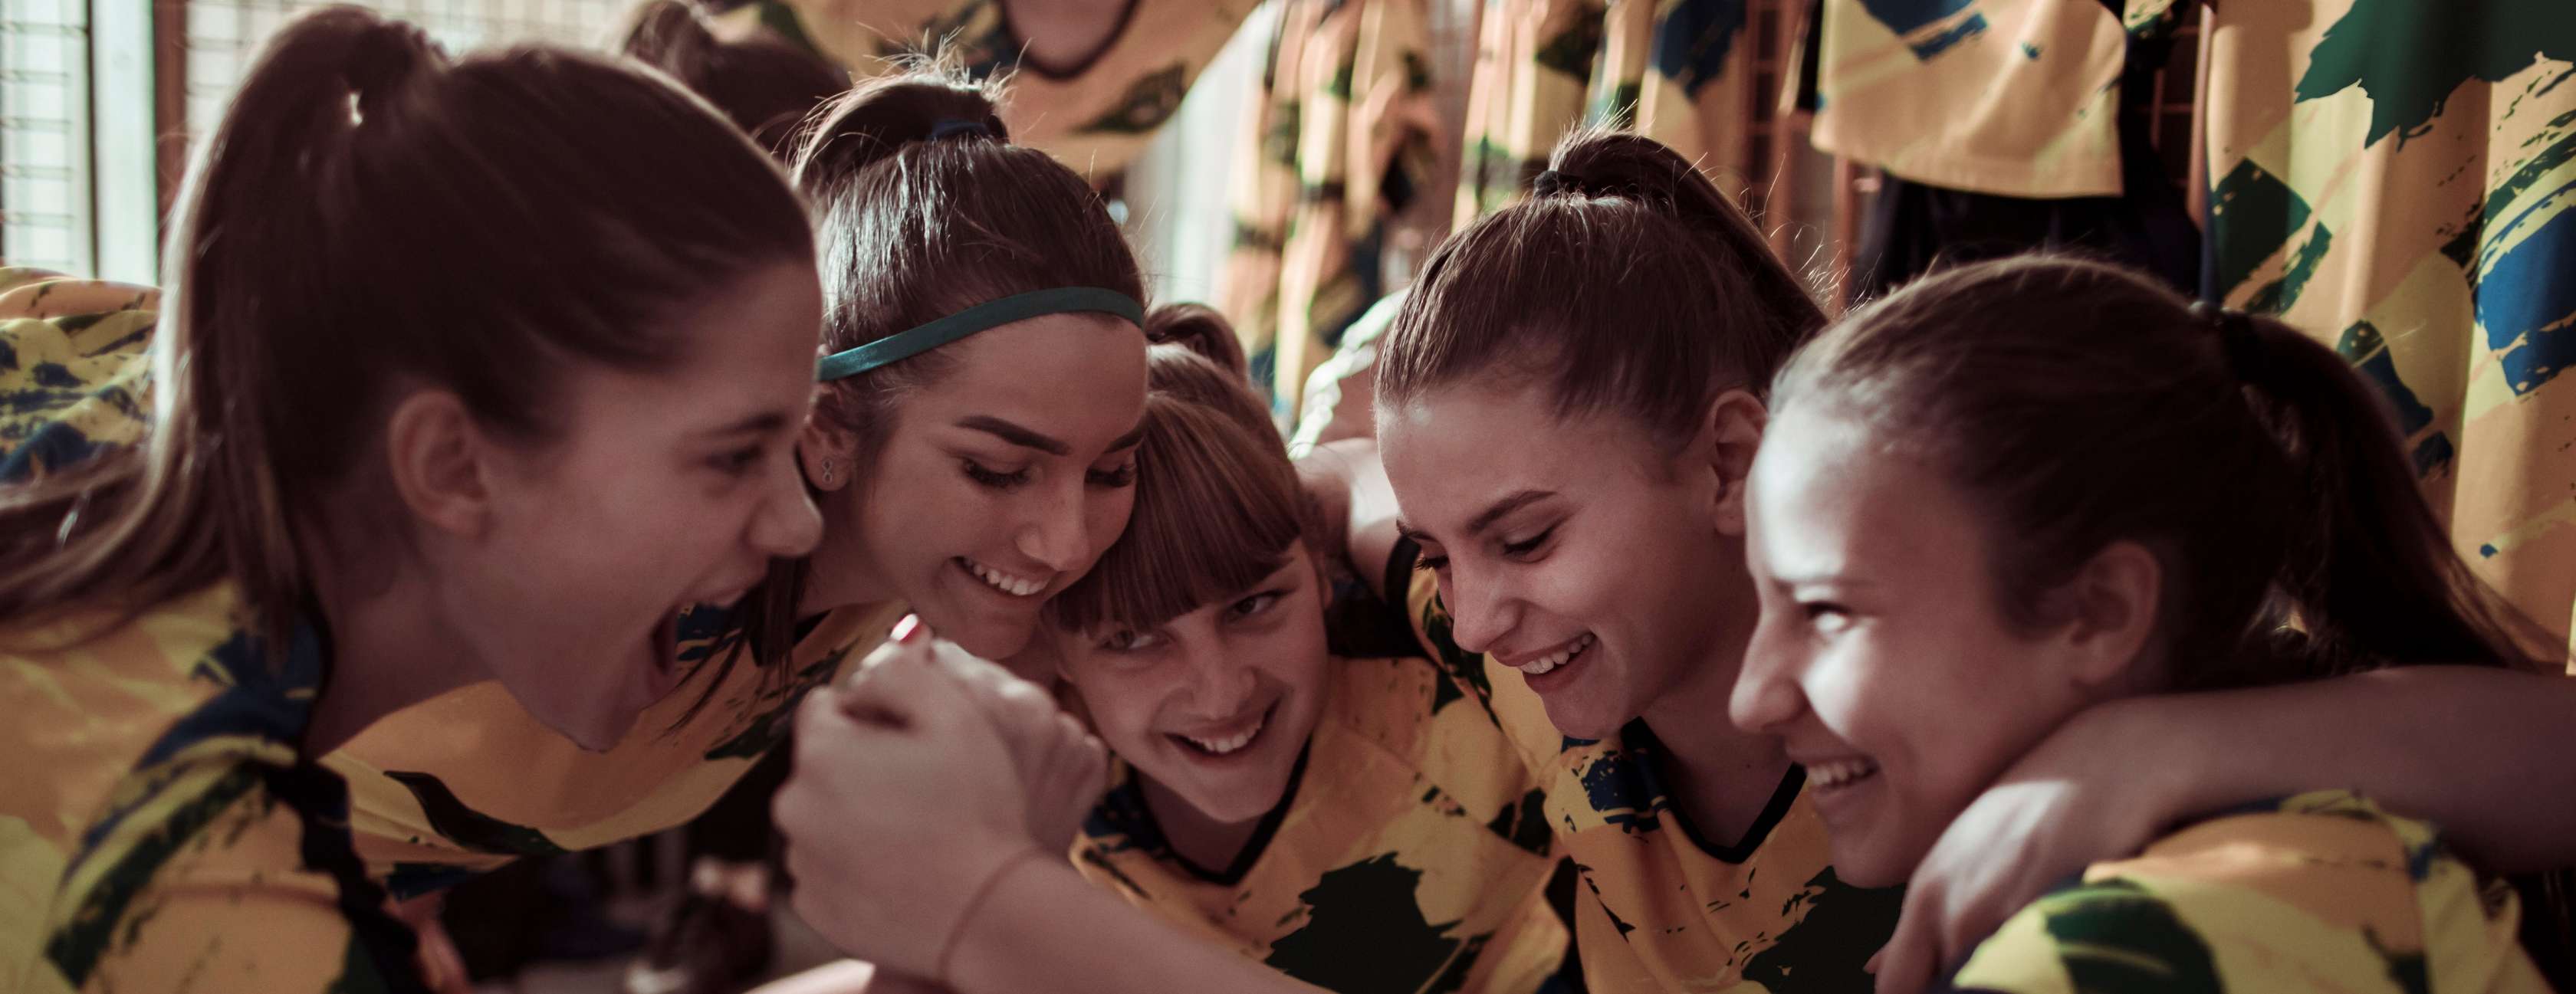 Mädchen einer Sportmannschaft in gelb-grünen Trikots umarmen sich lachend.